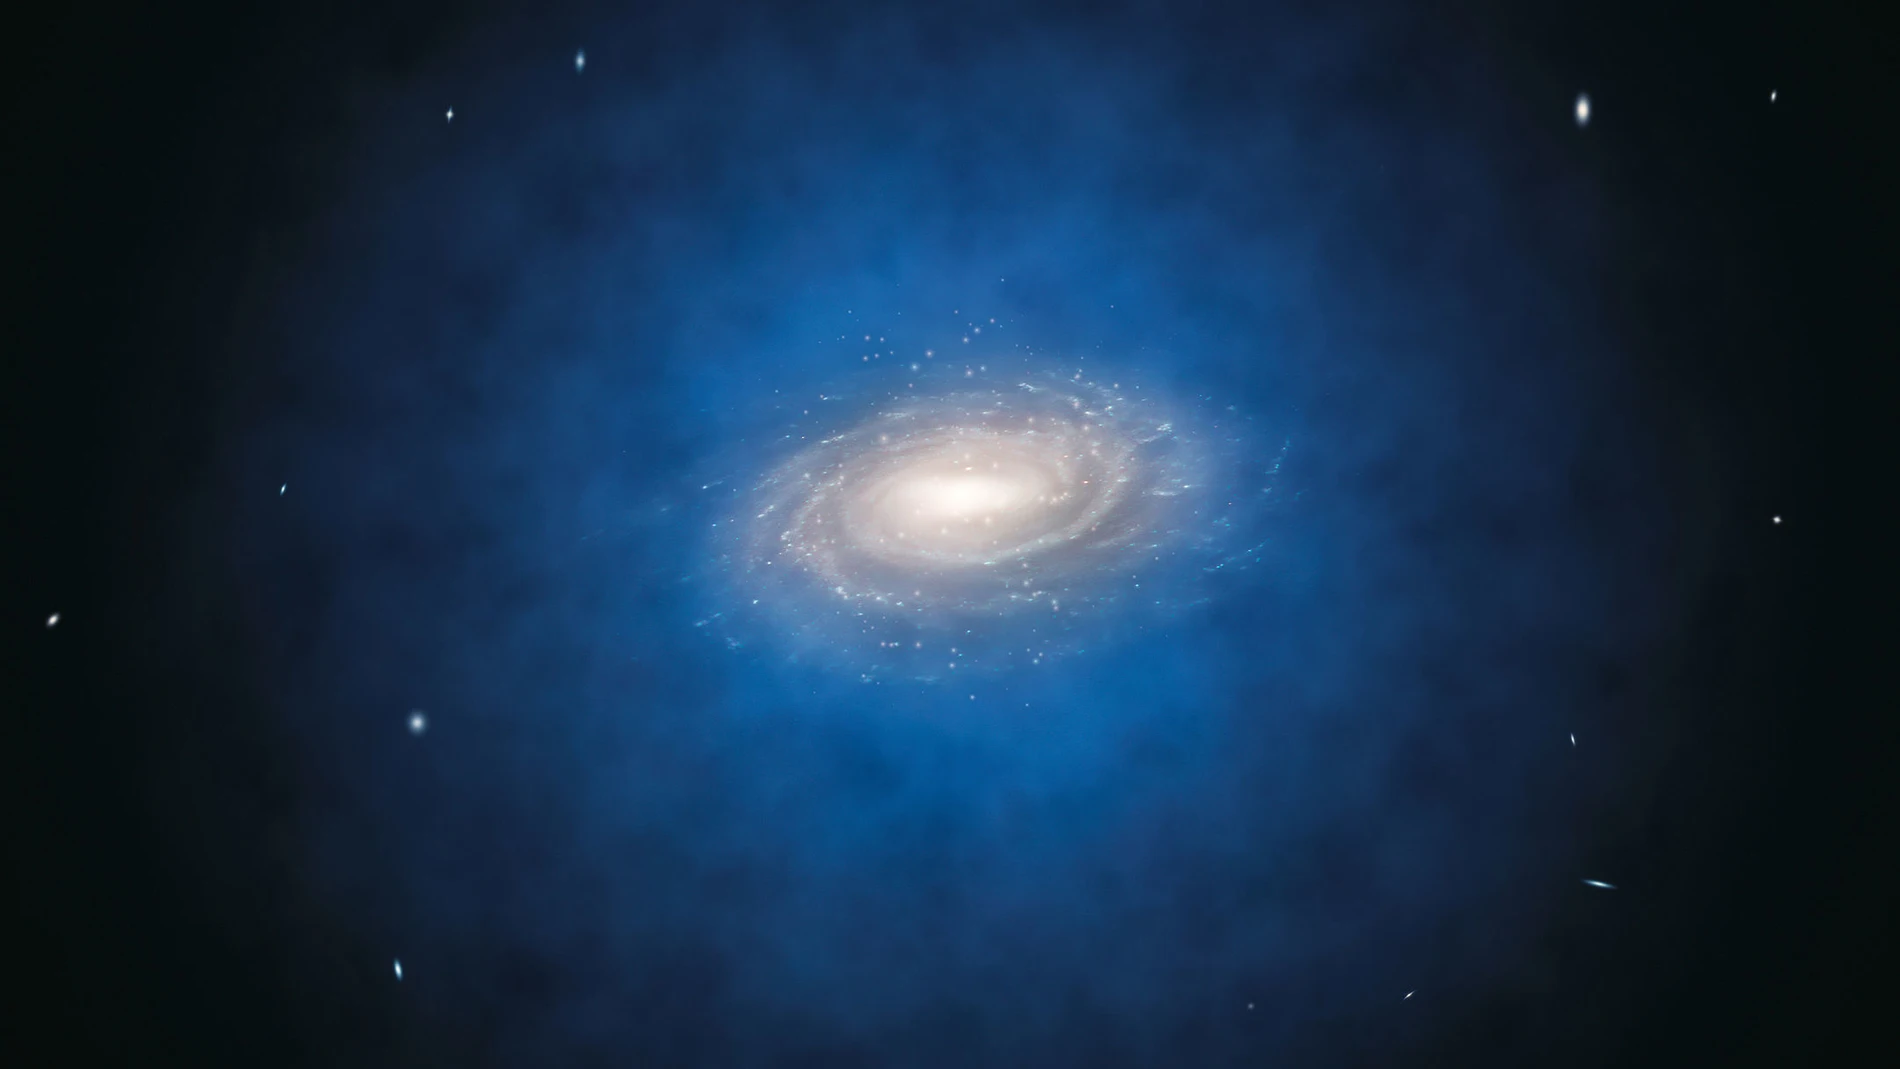 Una representación artística de la Vía Láctea, con la nube de materia oscura en la que está inmersa coloreada en azul. Todo indica que las galaxias se forman en el corazón de estas nubes, o “halos”, cuya extensión puede ser muy variable. En algunos casos el halo puede ser hasta diez veces más grande que la propia galaxia.